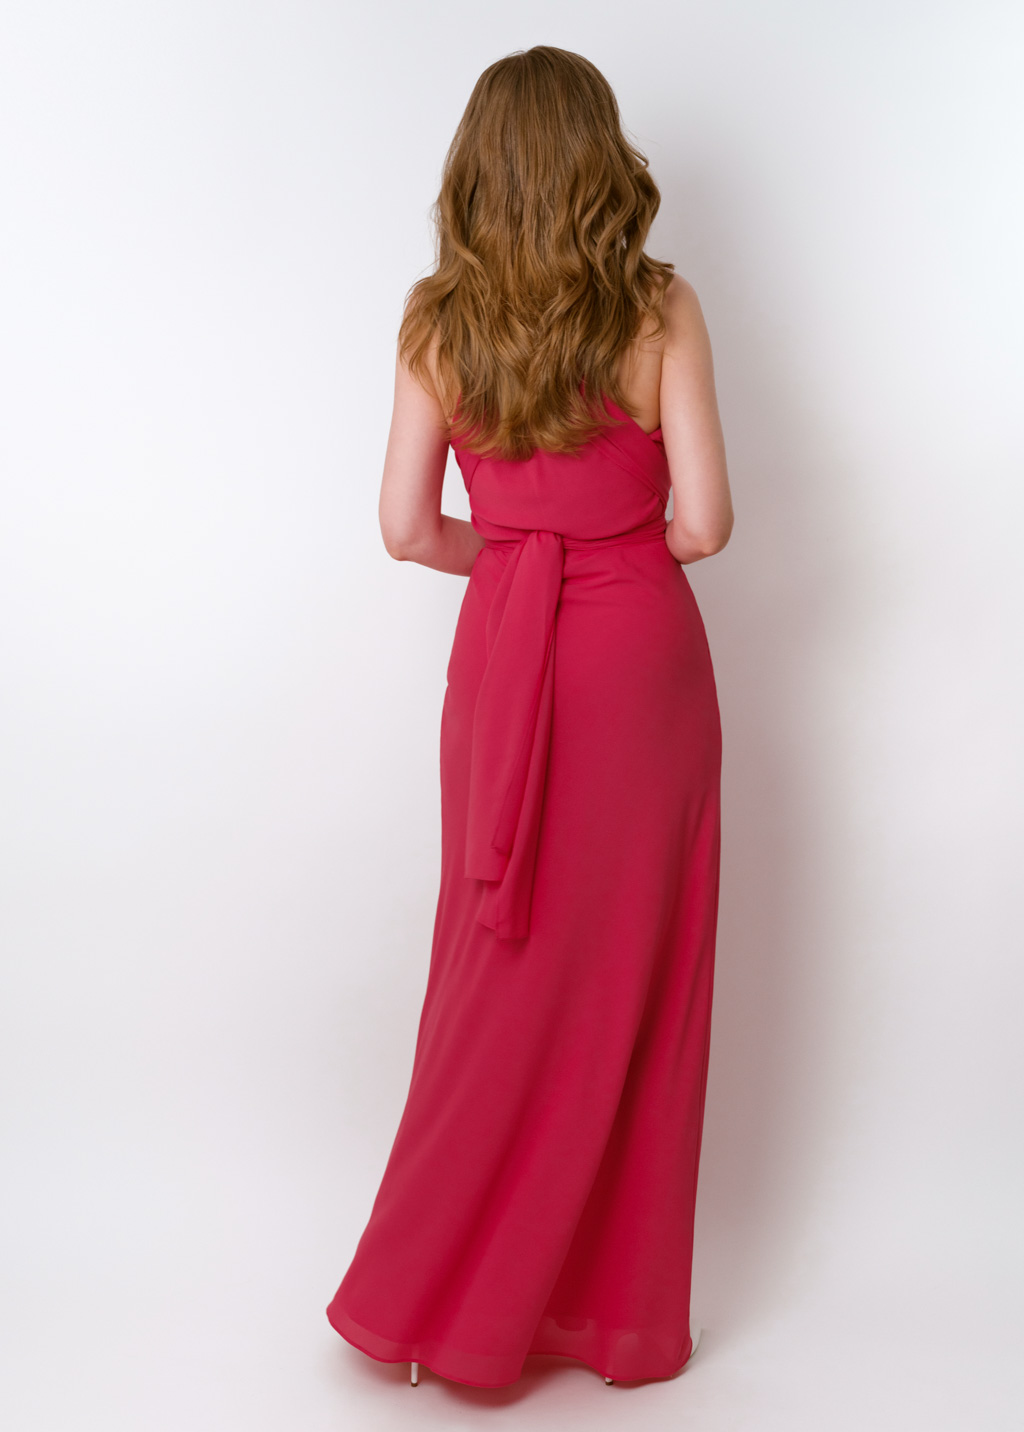 Coral pink chiffon infinity long dress